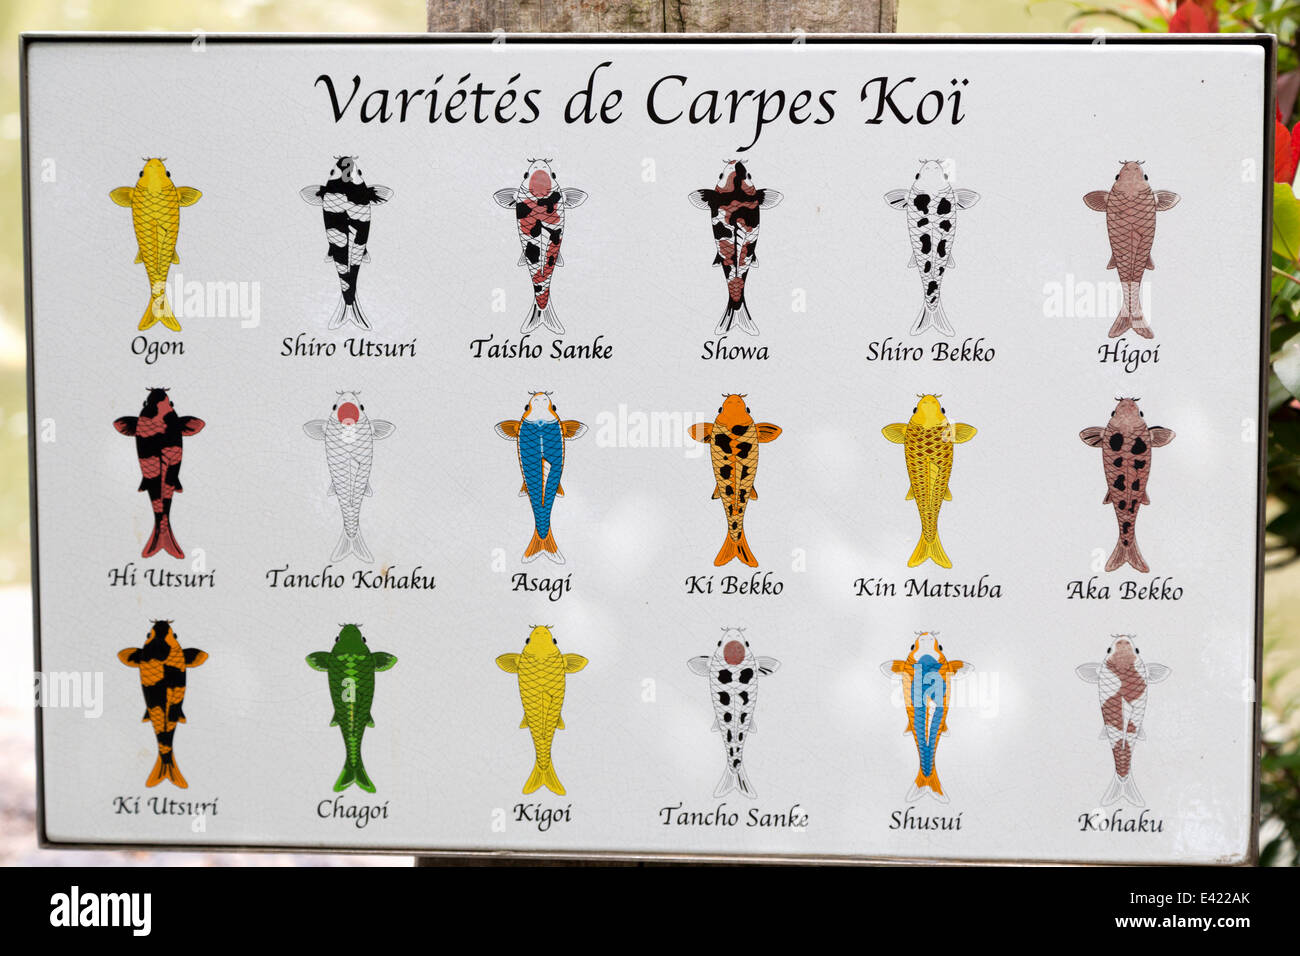 Monaco, Japanese Garden, 'Jardin Japonais de Monaco', board detailing varieties of Koi Carp. Stock Photo